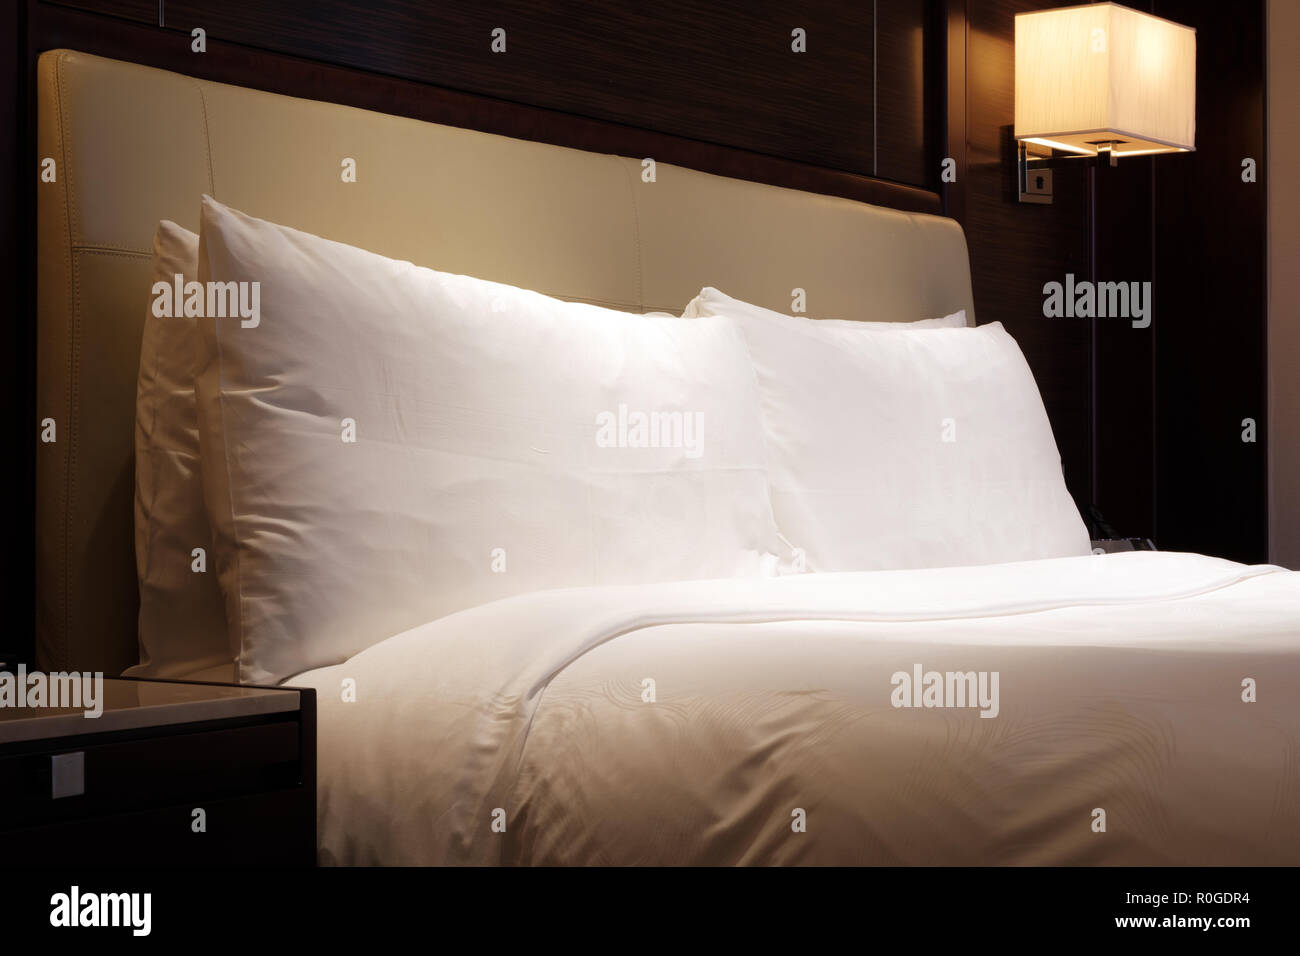 Camas king size fotografías e imágenes de alta resolución - Alamy